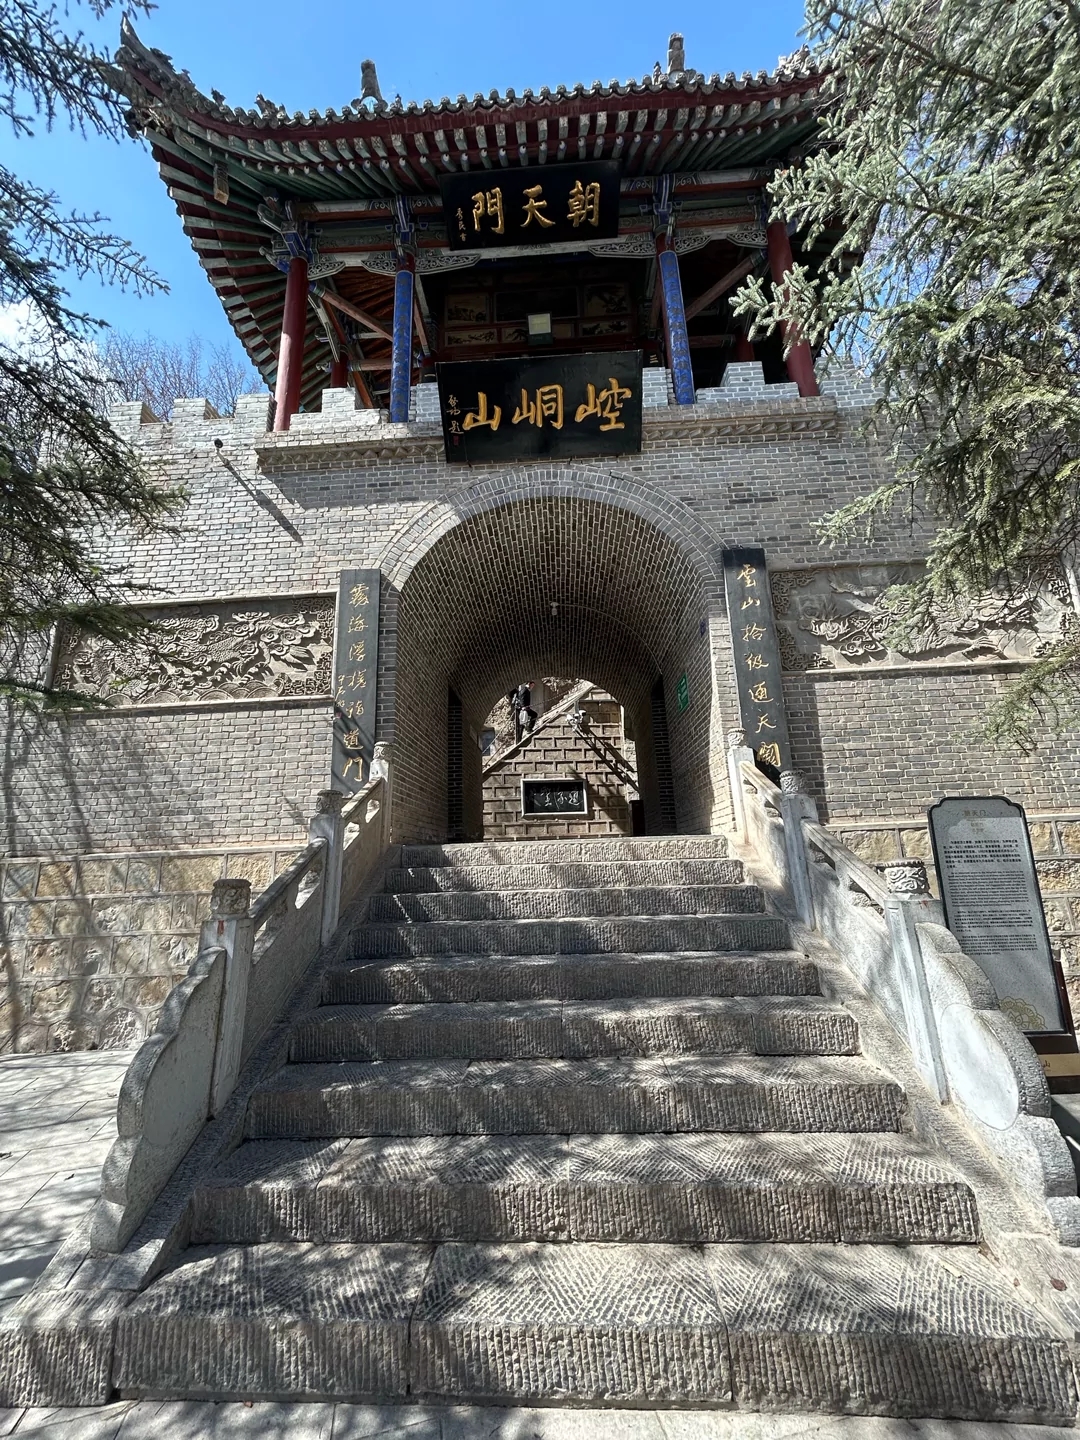 崆峒山一日游最佳线路 崆峒山位于甘肃省平凉市，是道教的发源地之一，也是中国五大武术流派之一的崆峒派的